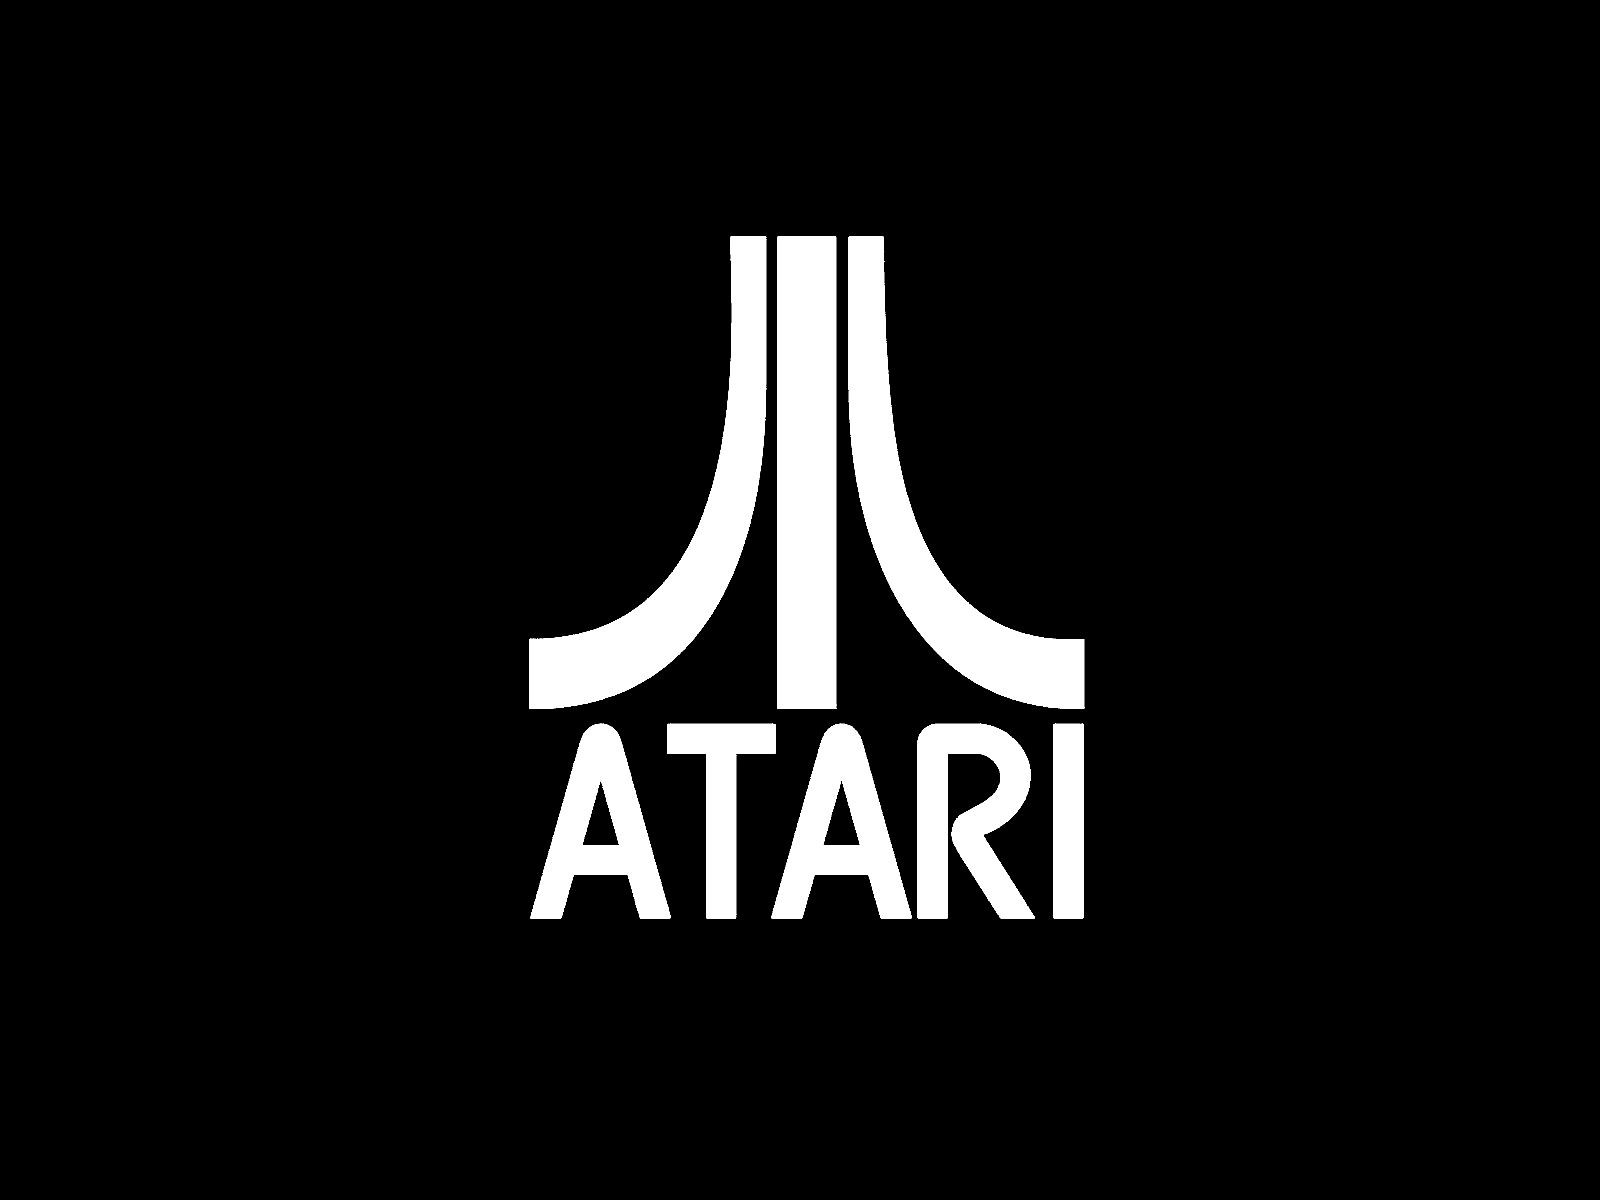 Atari Logo Wallpaper